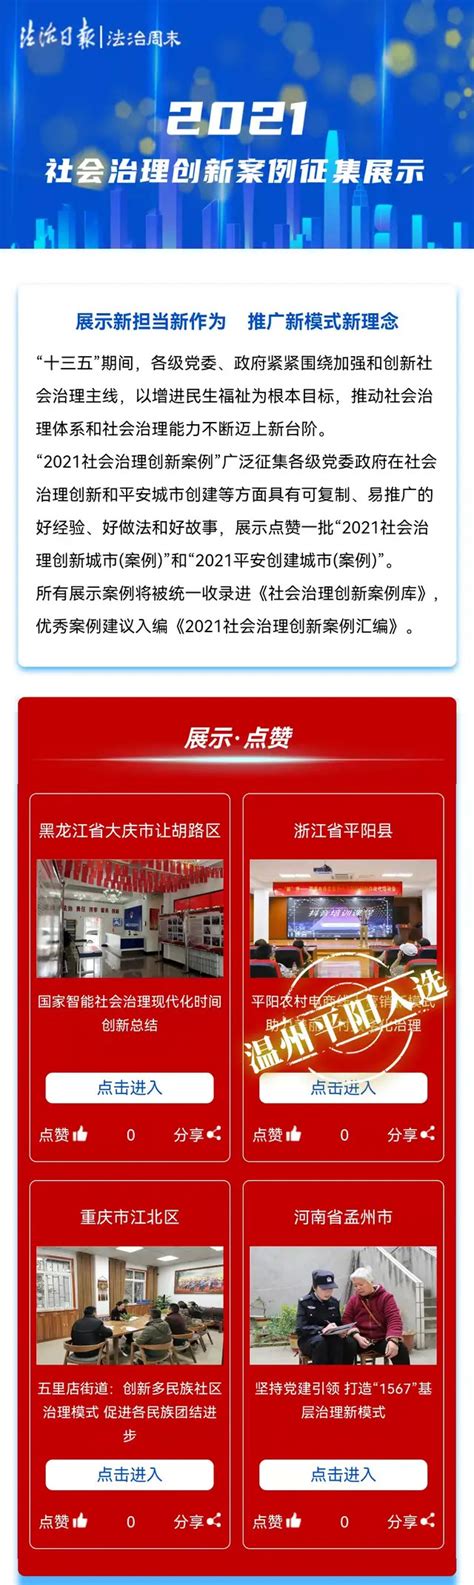 平阳网站推广营销